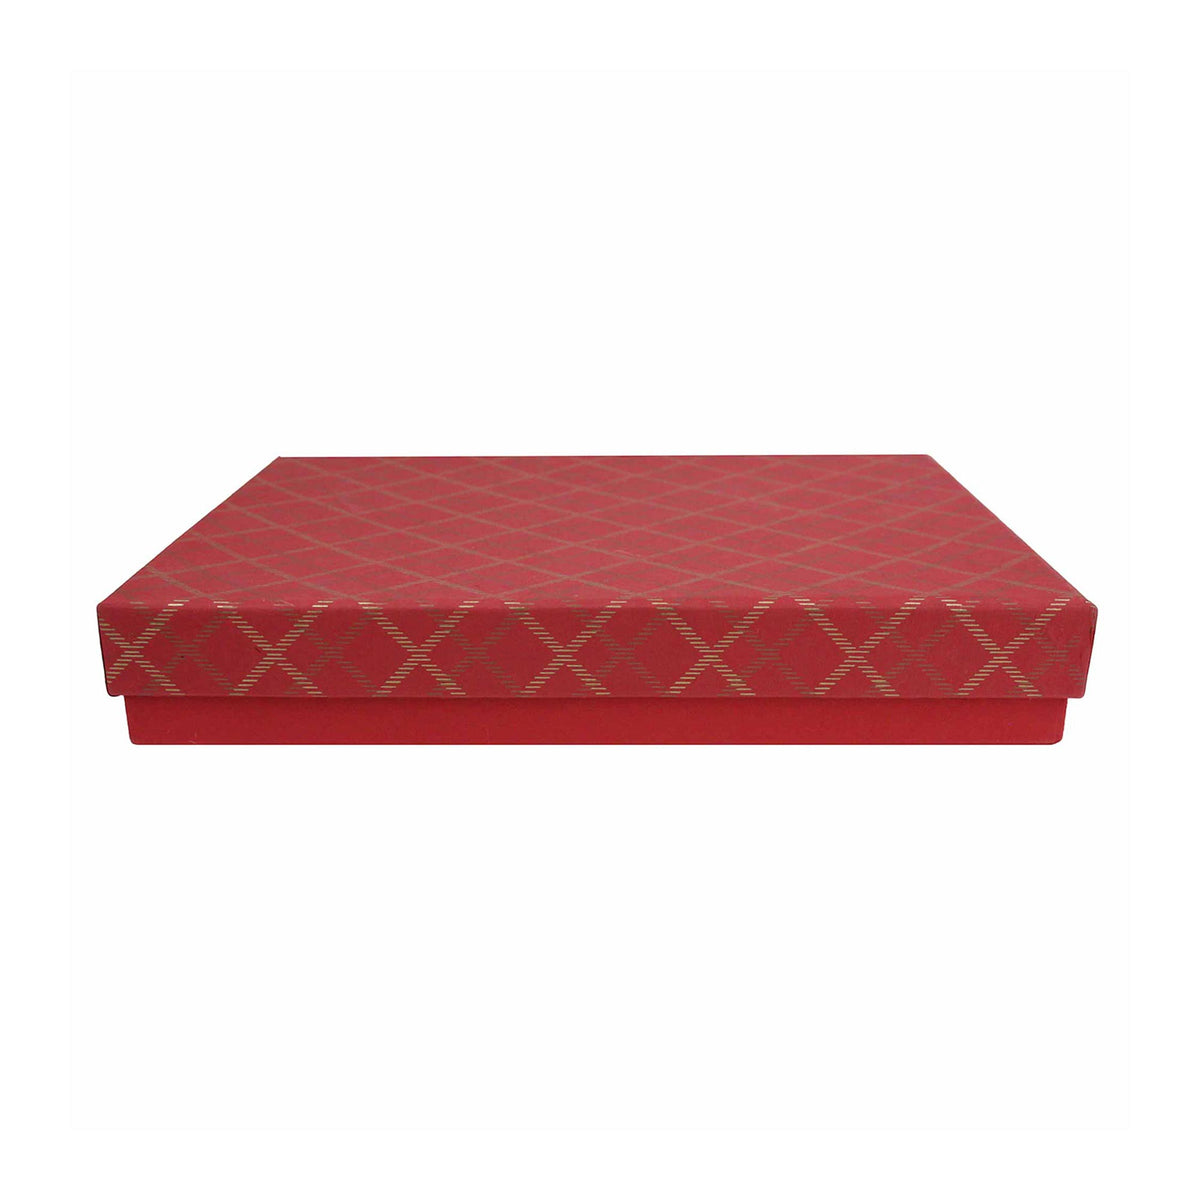 Single Handmade Red Chequered Gift Box